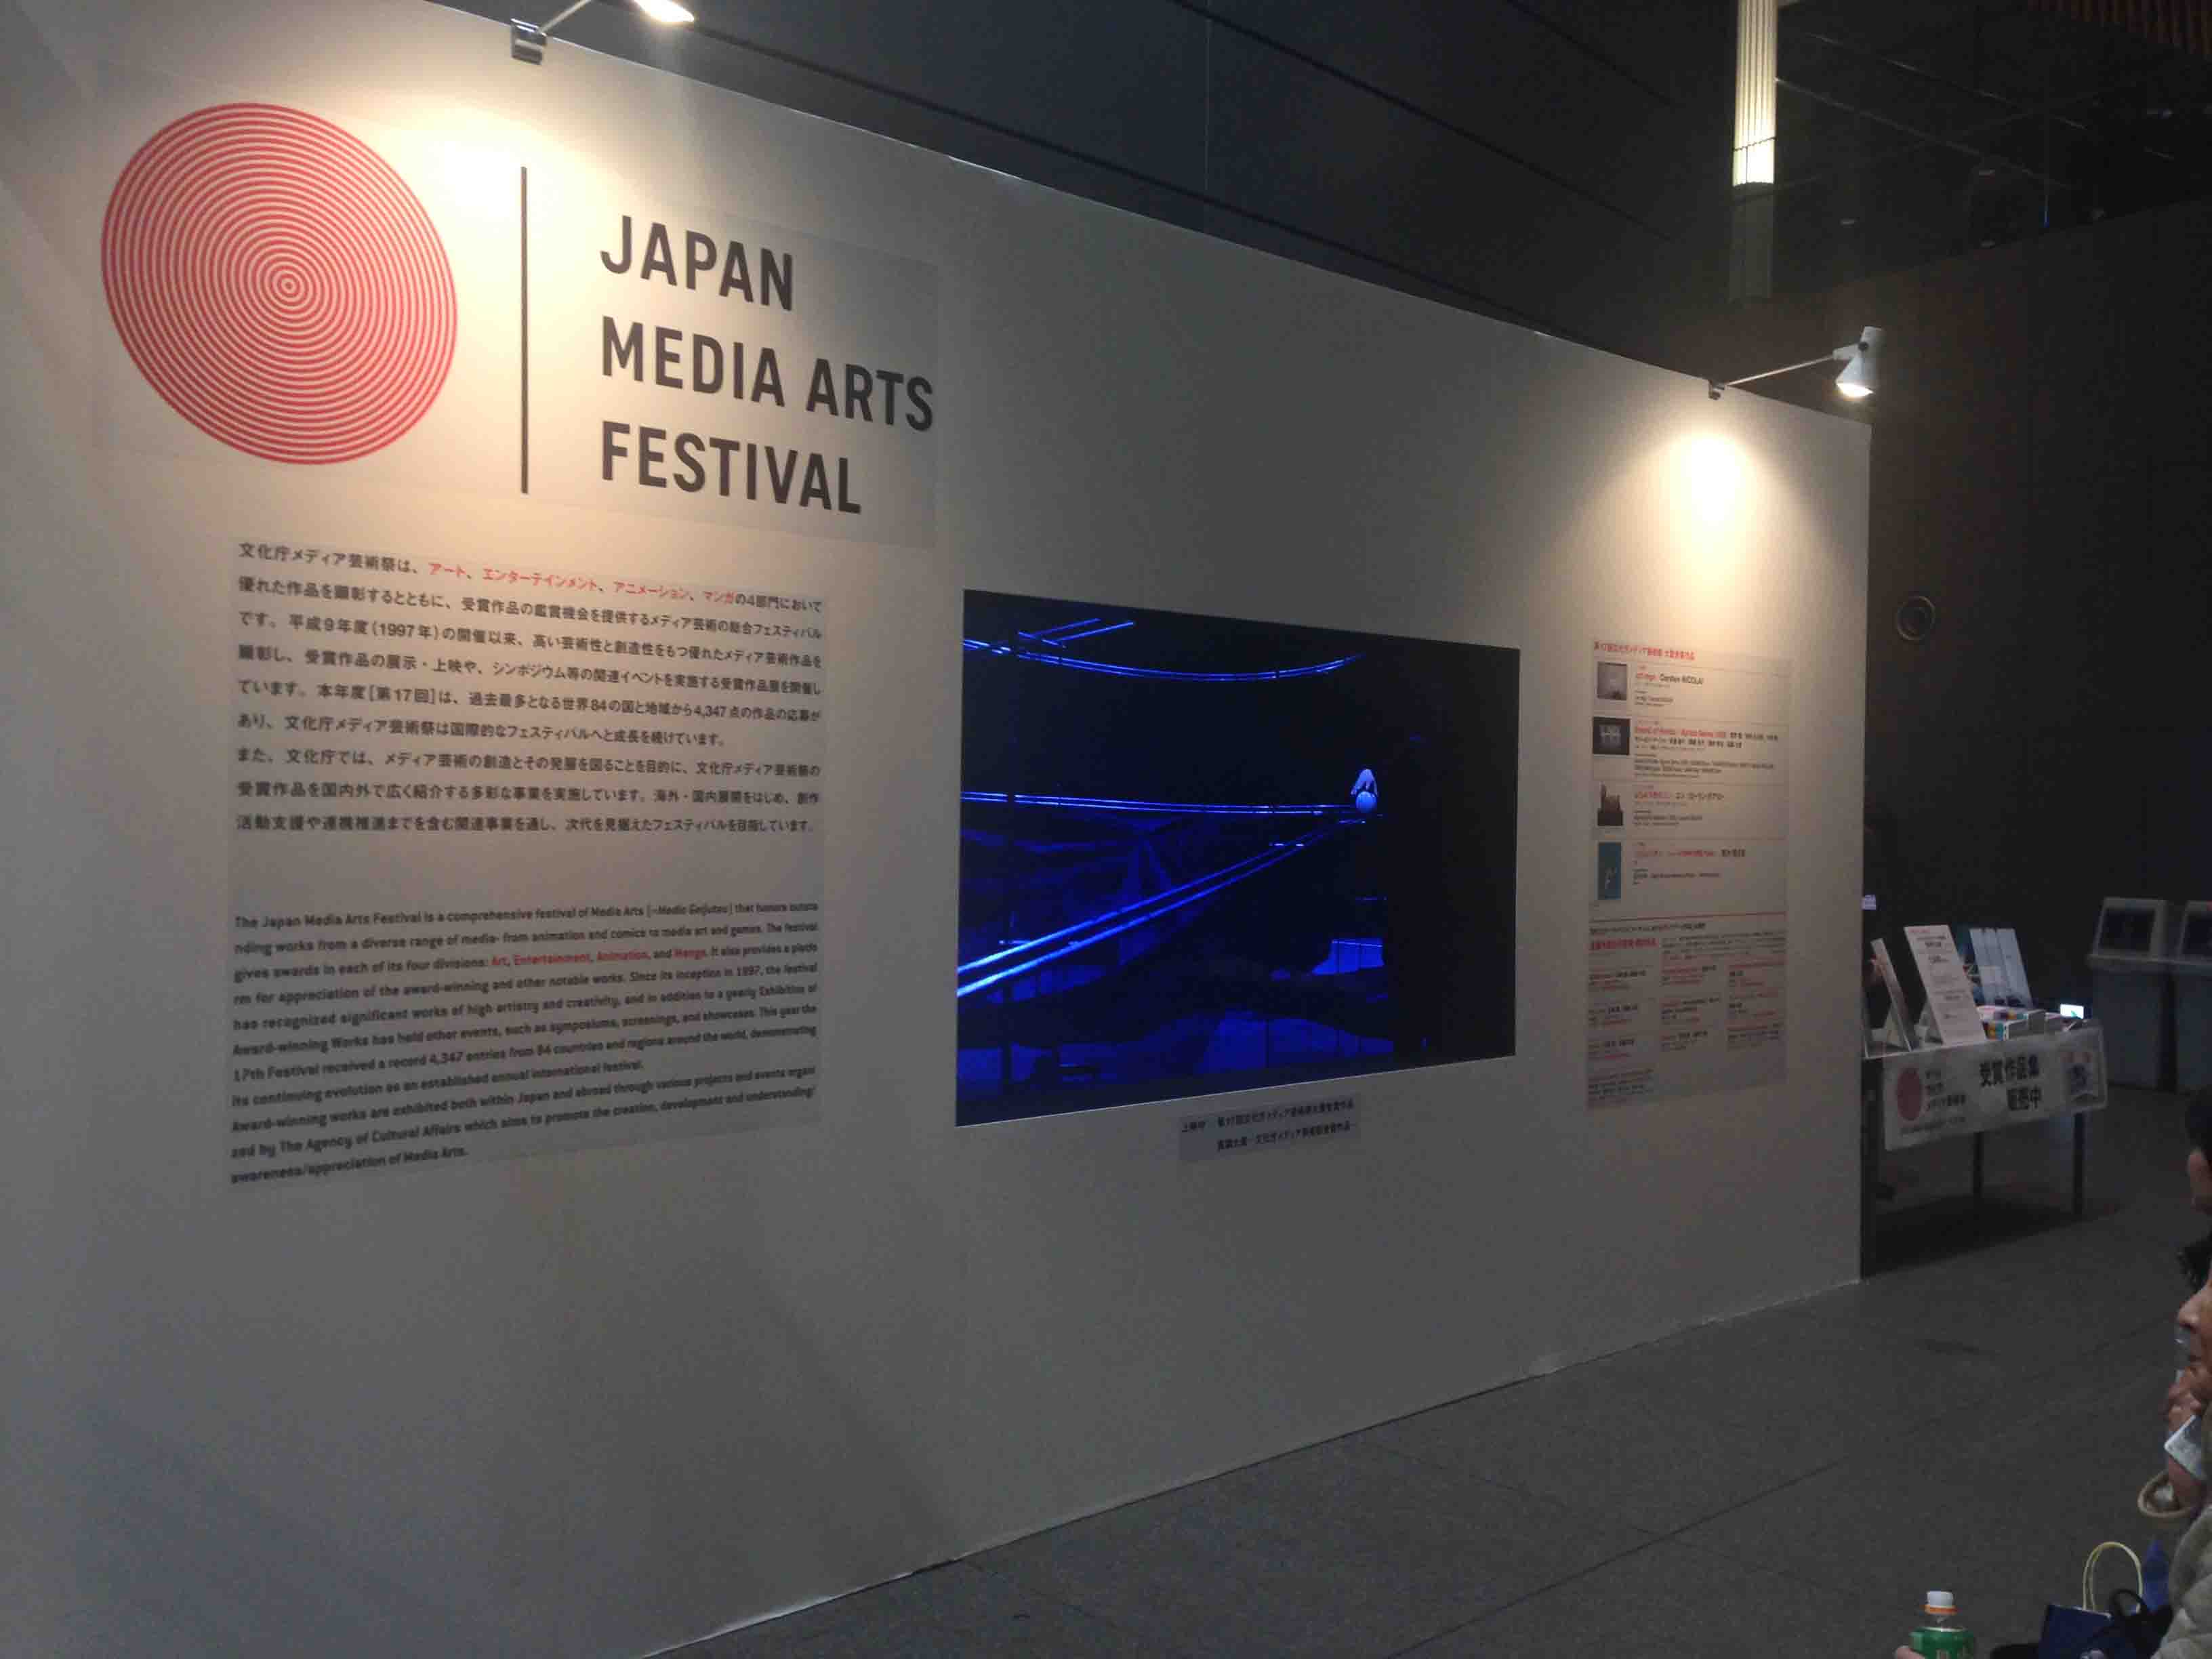 「文化庁メディア芸術祭」ブースでは椅子に座って映像作品を鑑賞することができる。